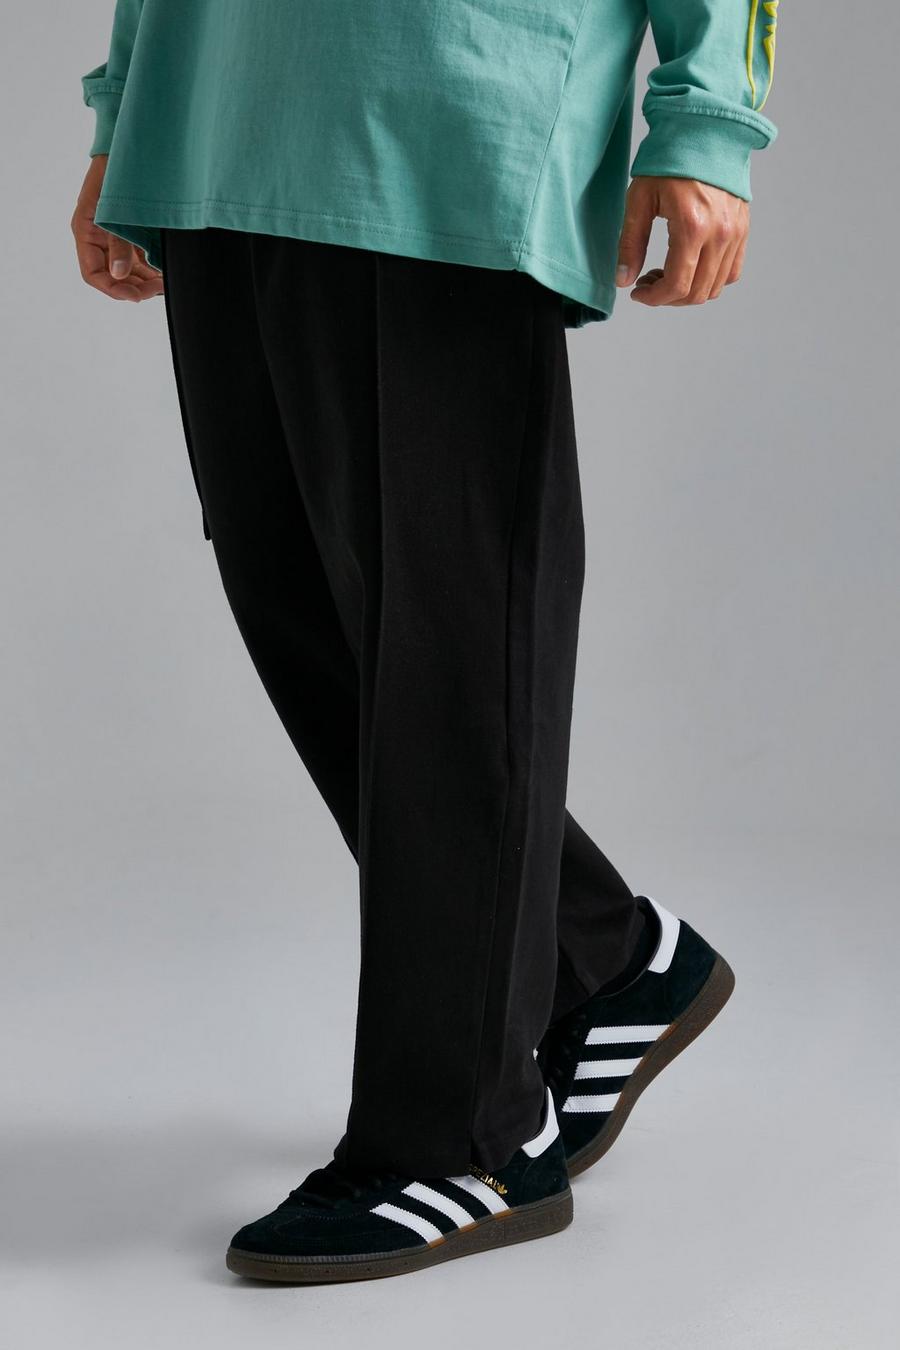 Pantalón chino elegante ancho con 1 bolsillo, Black negro